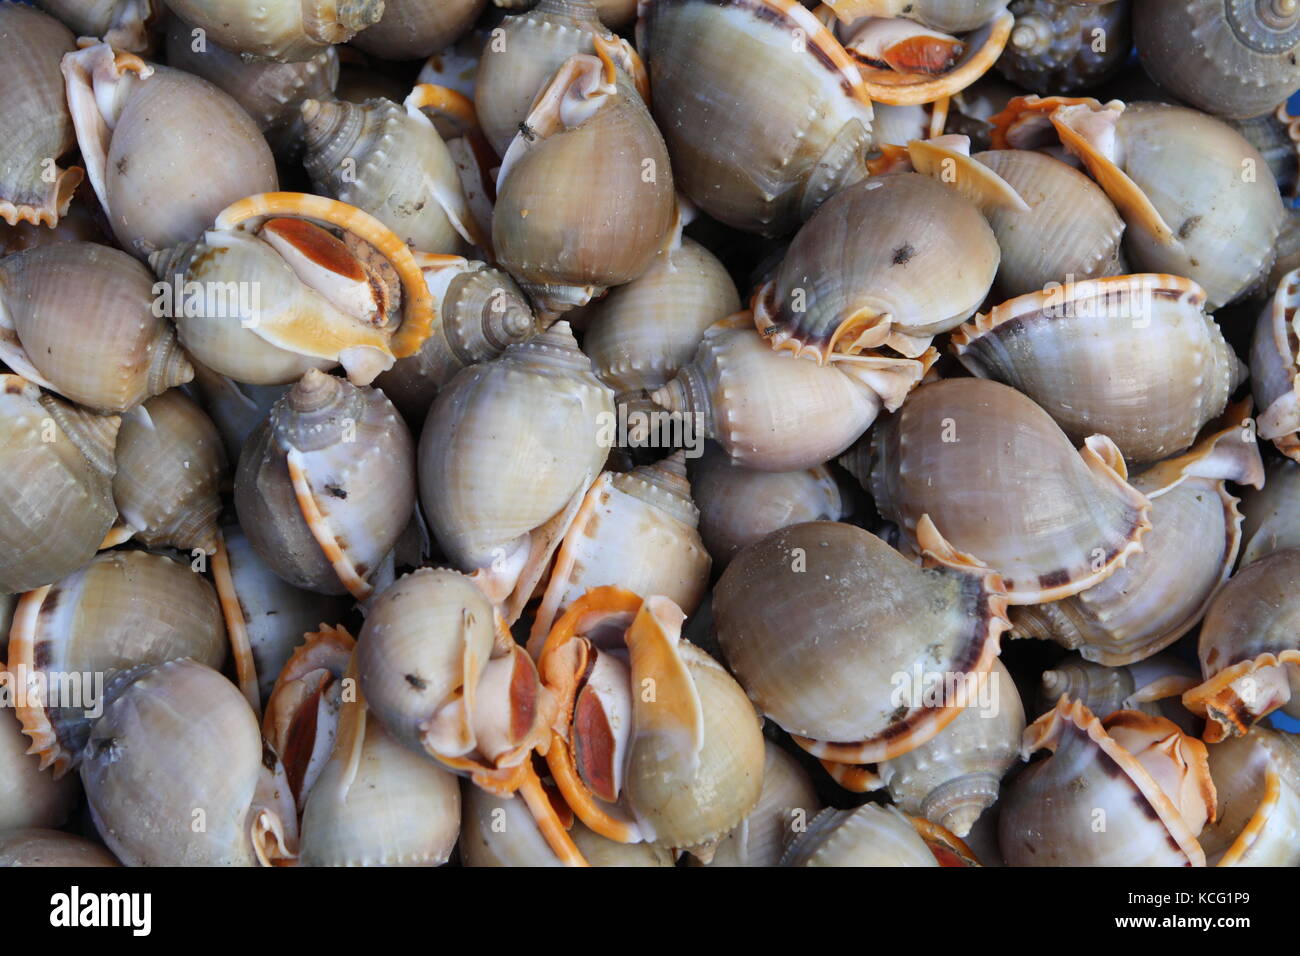 Schnecken auf Markt in Vietnam zum essen - Snails on market in Vietnam to eat Stock Photo